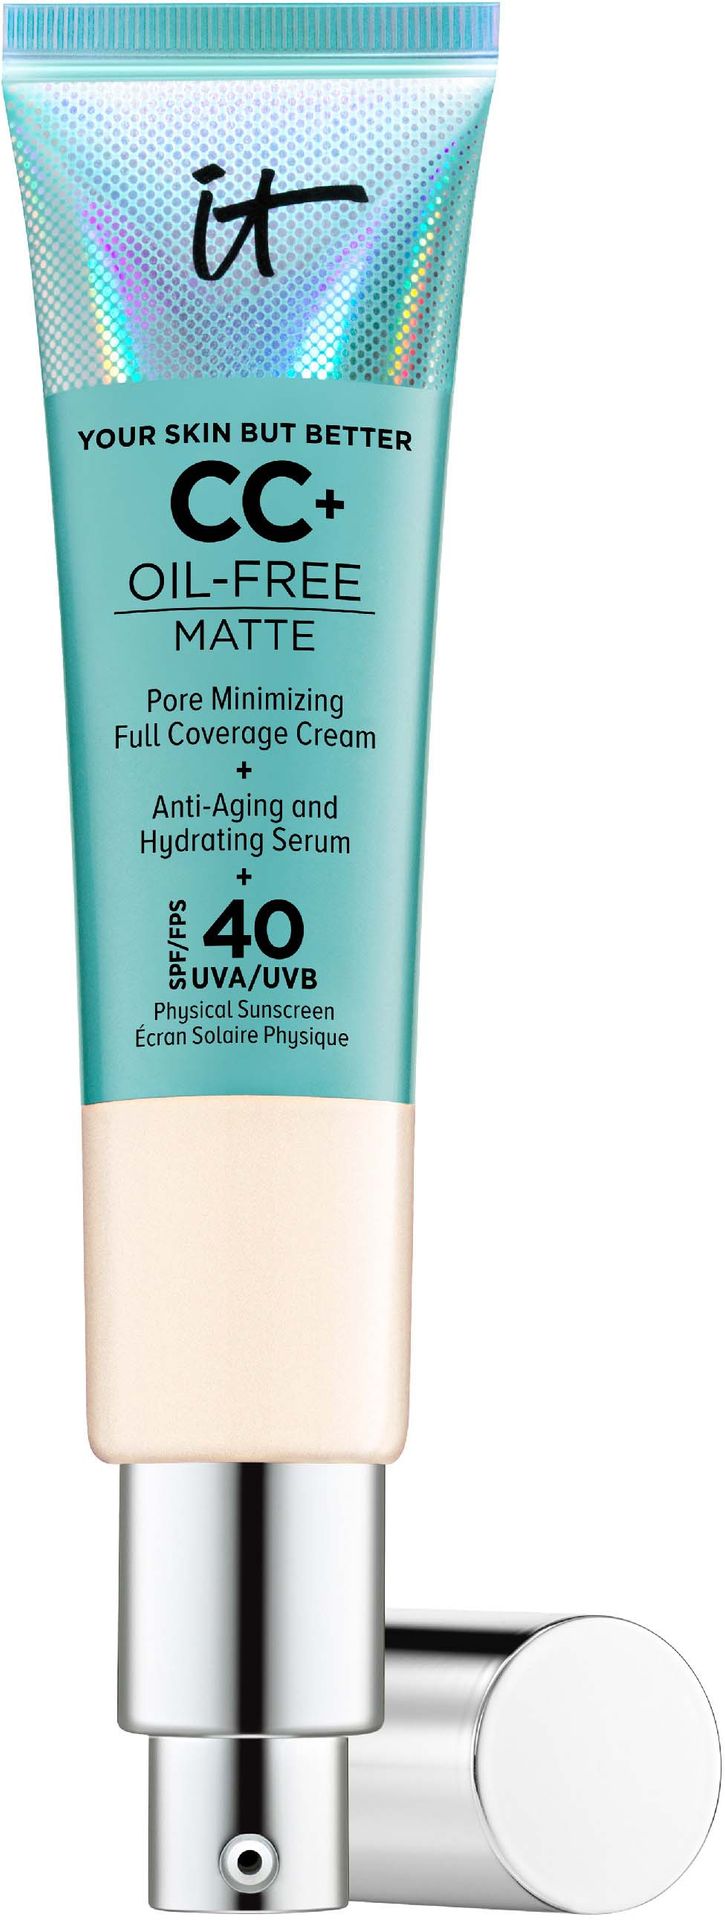 IT Cosmetics IT Cosmetics Fair Your Skin But Better CC+ Oil-Control Matte SPF 40+ Podkład 32ml